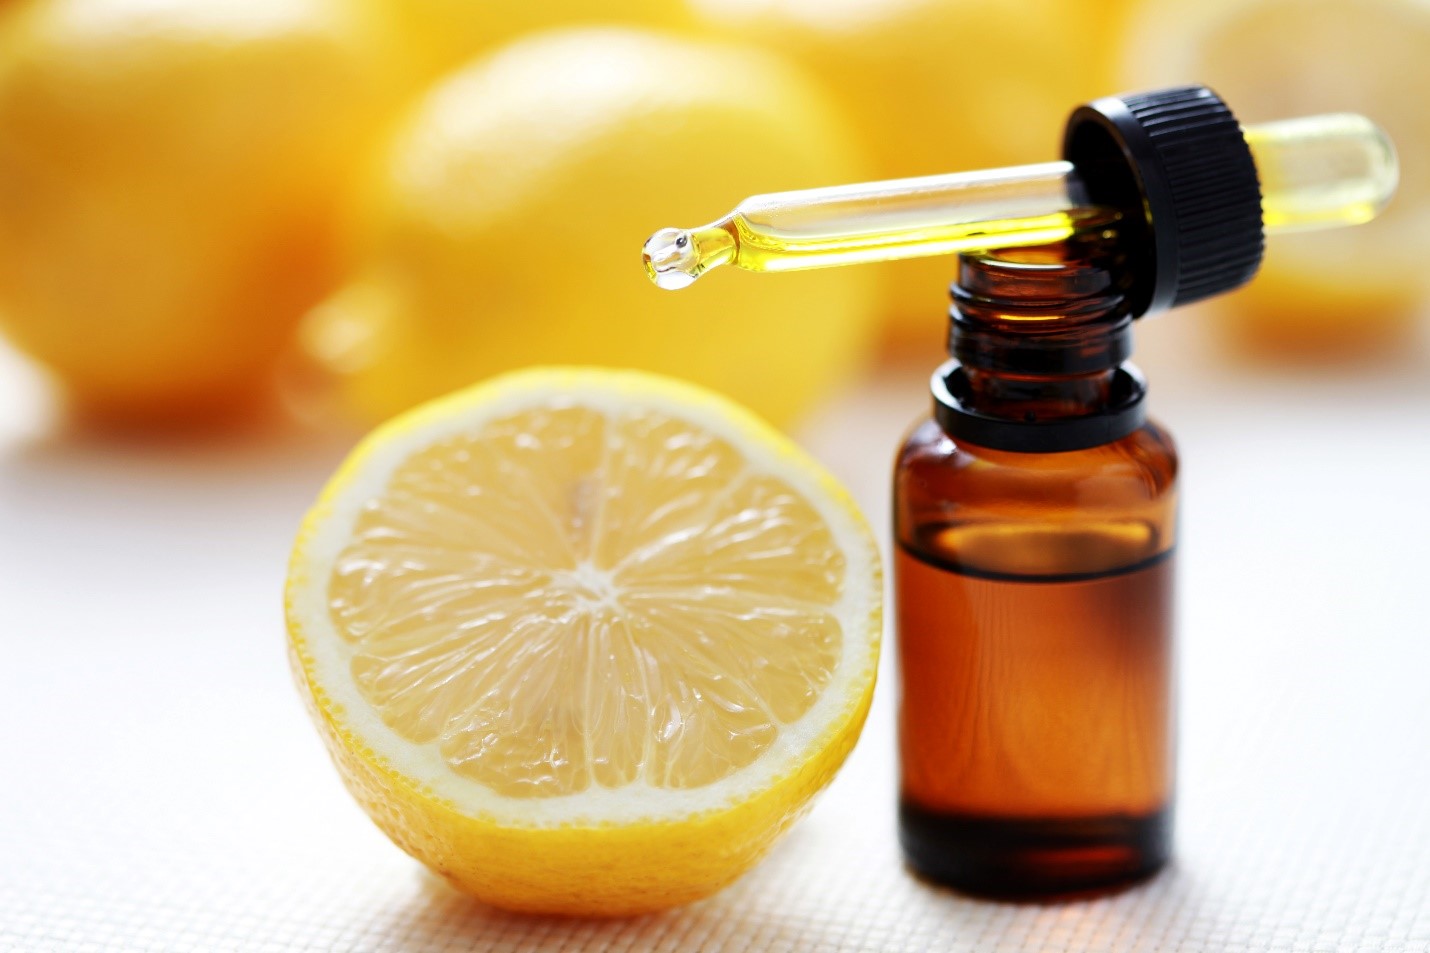 Olio essenziale di limone fatto in casa: proprietà e utilizzi - Fratelli  Orsero